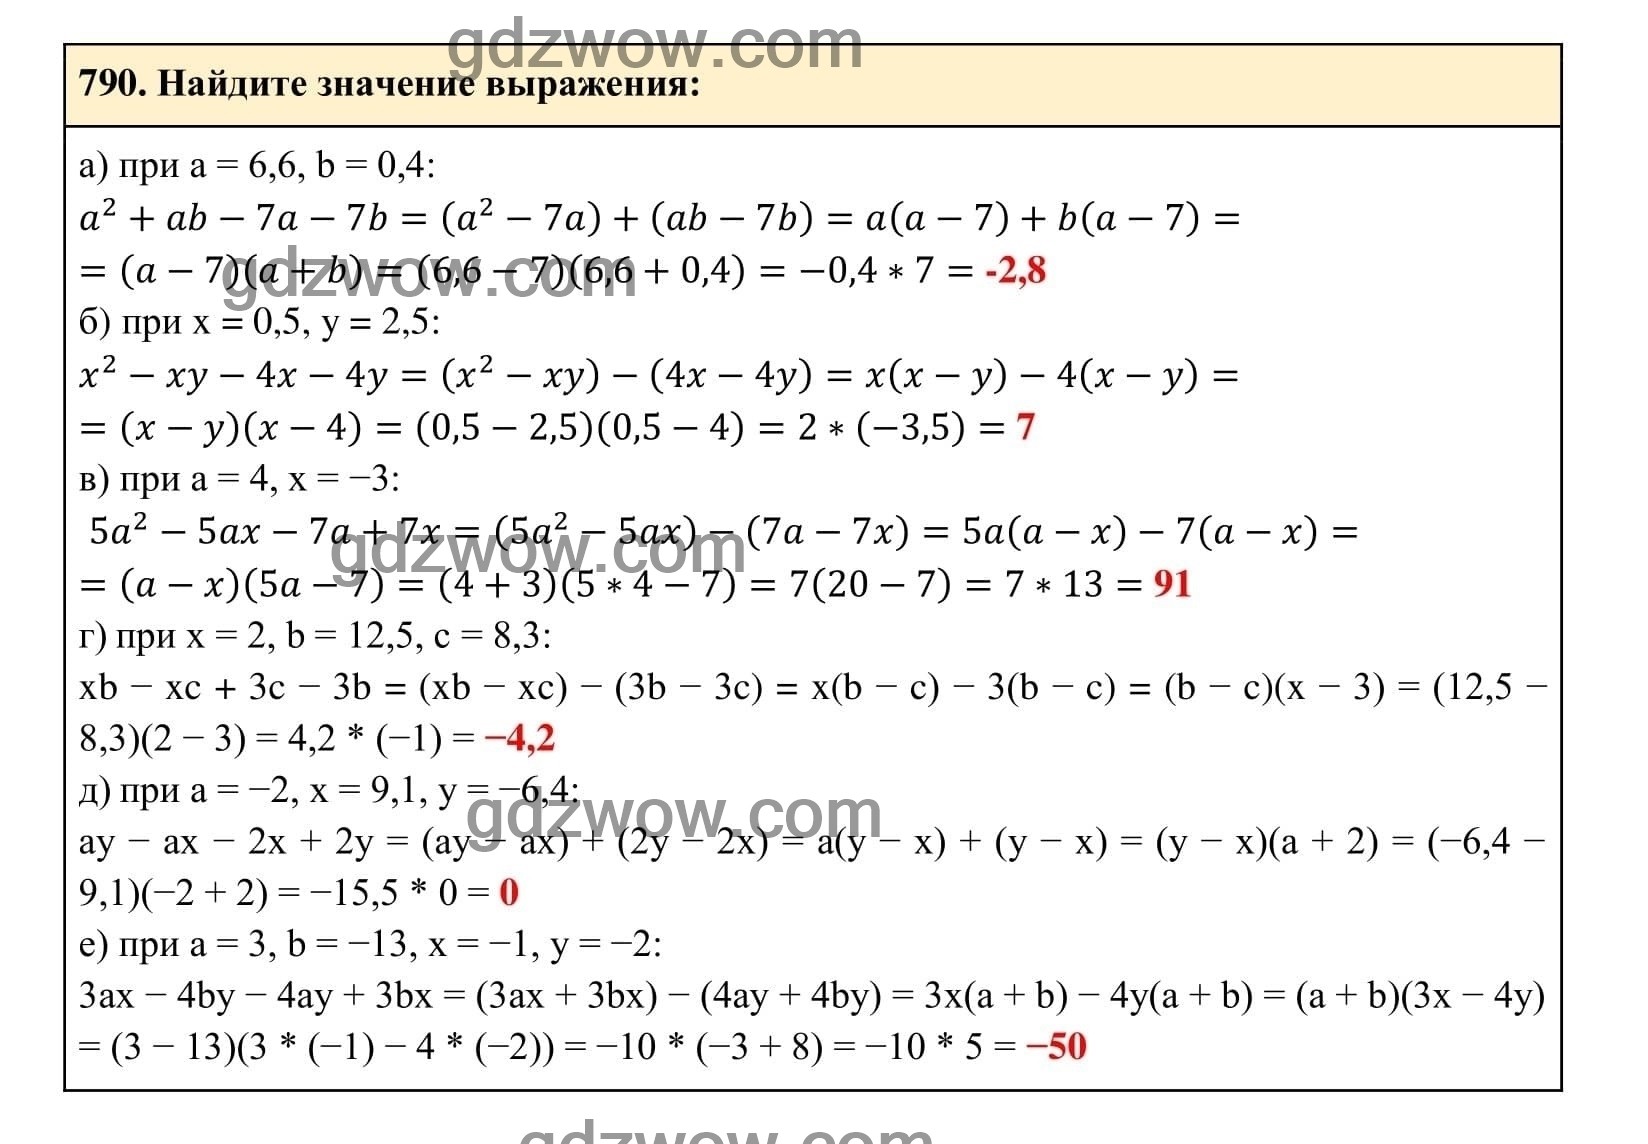 Упражнение 790 - ГДЗ по Алгебре 7 класс Учебник Макарычев (решебник) - GDZwow